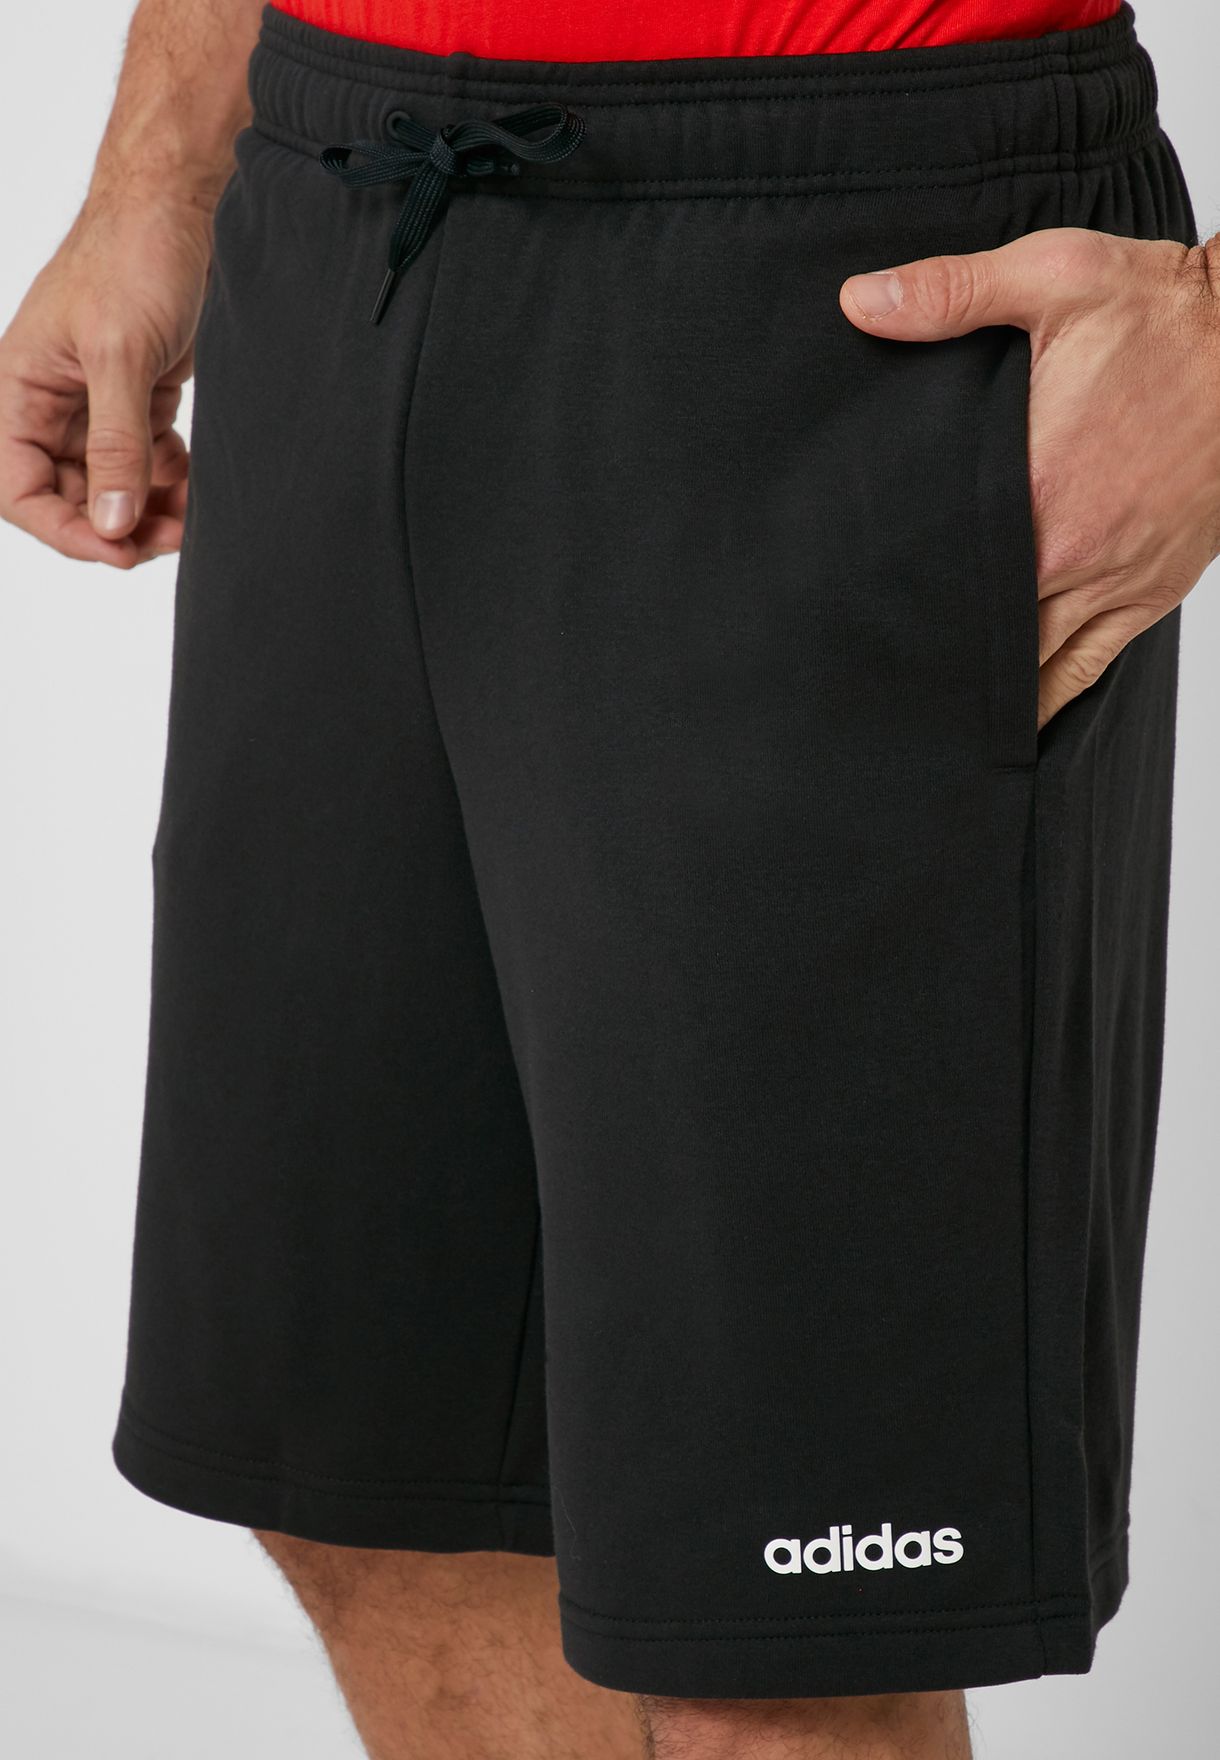 soborno Fuera de servicio Inscribirse Buy adidas black Essential Shorts for Men in MENA, Worldwide